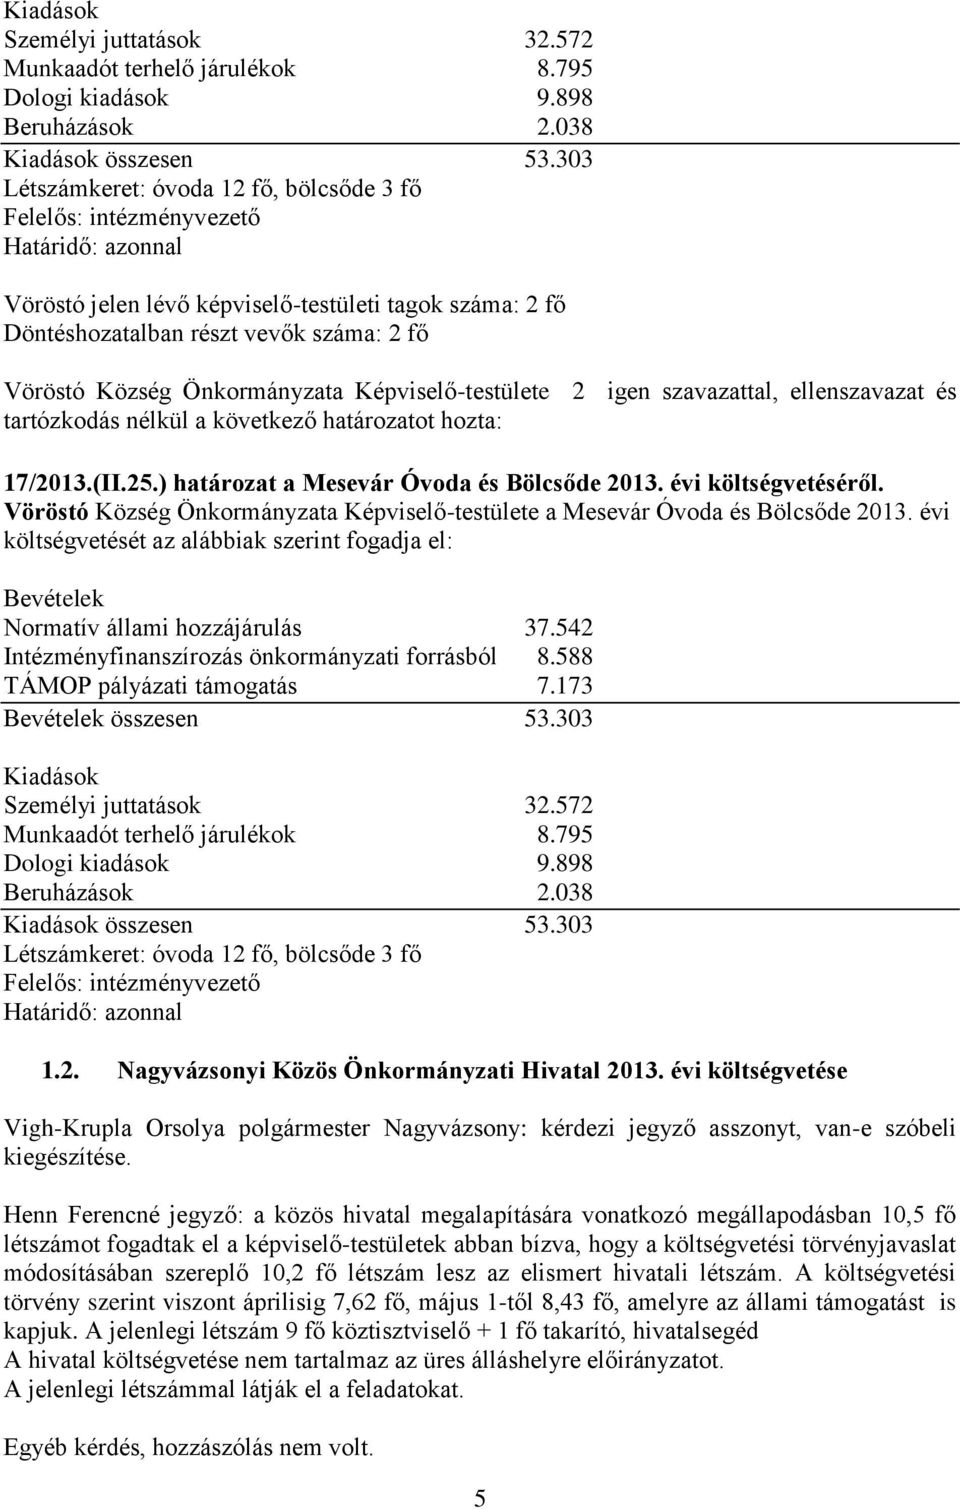 Község Önkormányzata Képviselő-testülete 2 igen szavazattal, ellenszavazat és 17/2013.(II.25.) határozat a Mesevár Óvoda és Bölcsőde 2013. évi költségvetéséről.